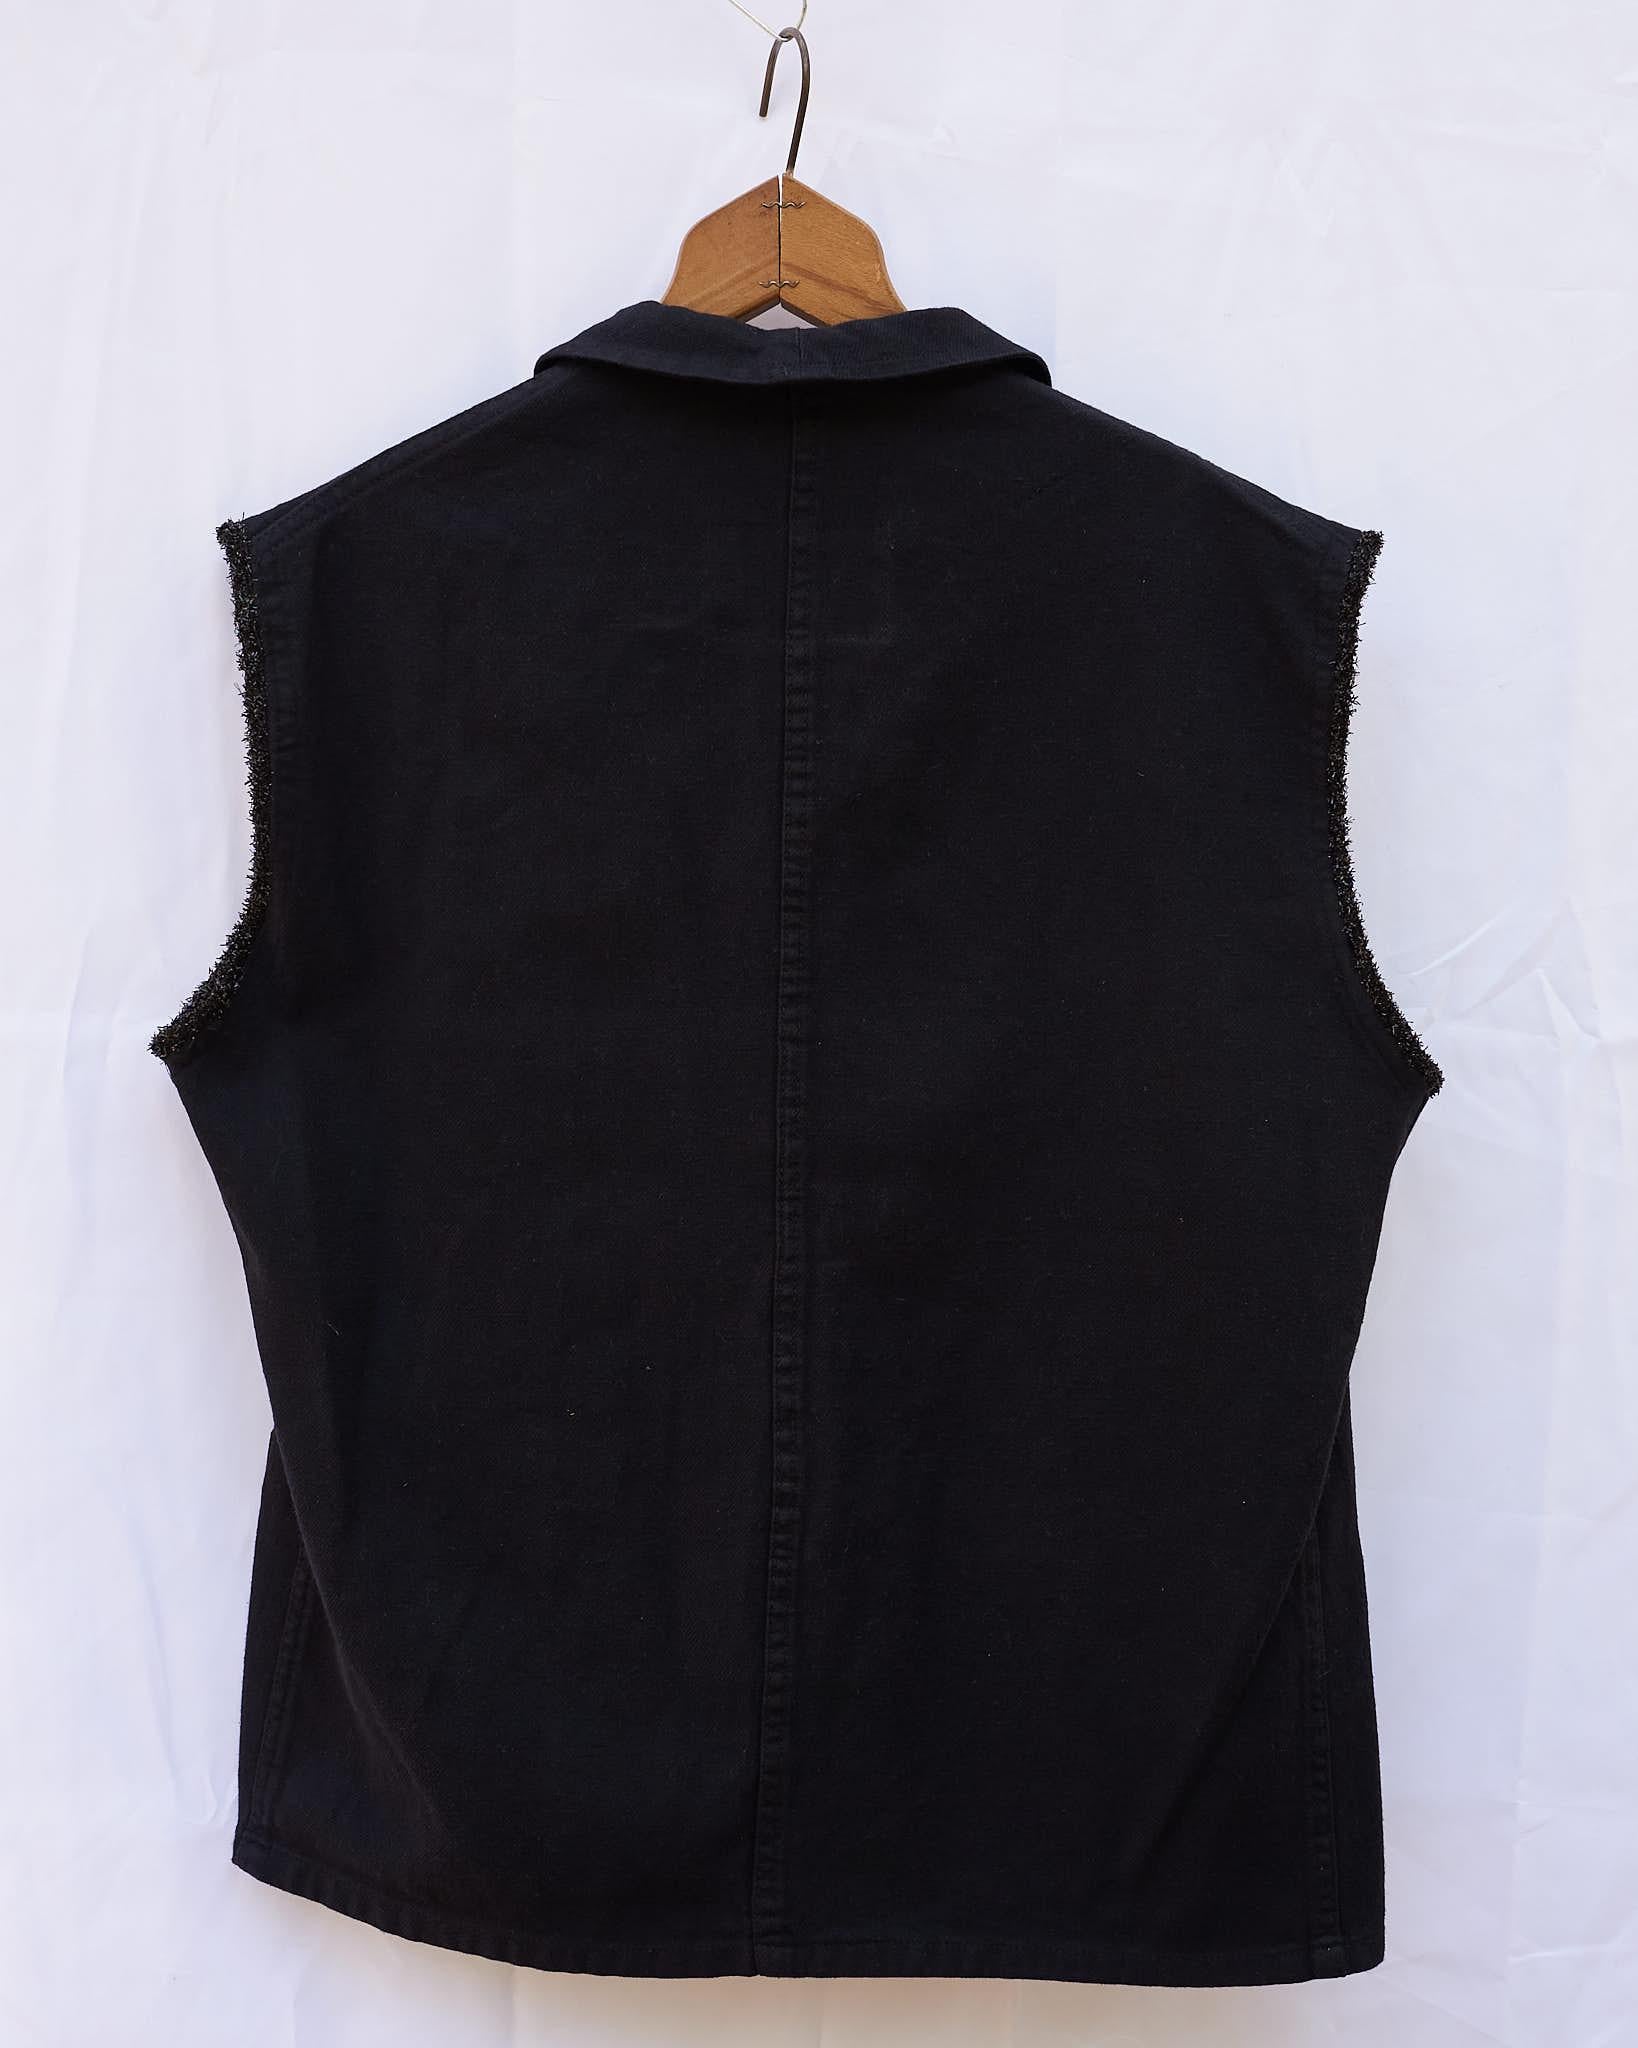 Sleeveless Vest Jacket Black French Work Wear Fringe Embellished J Dauphin 2